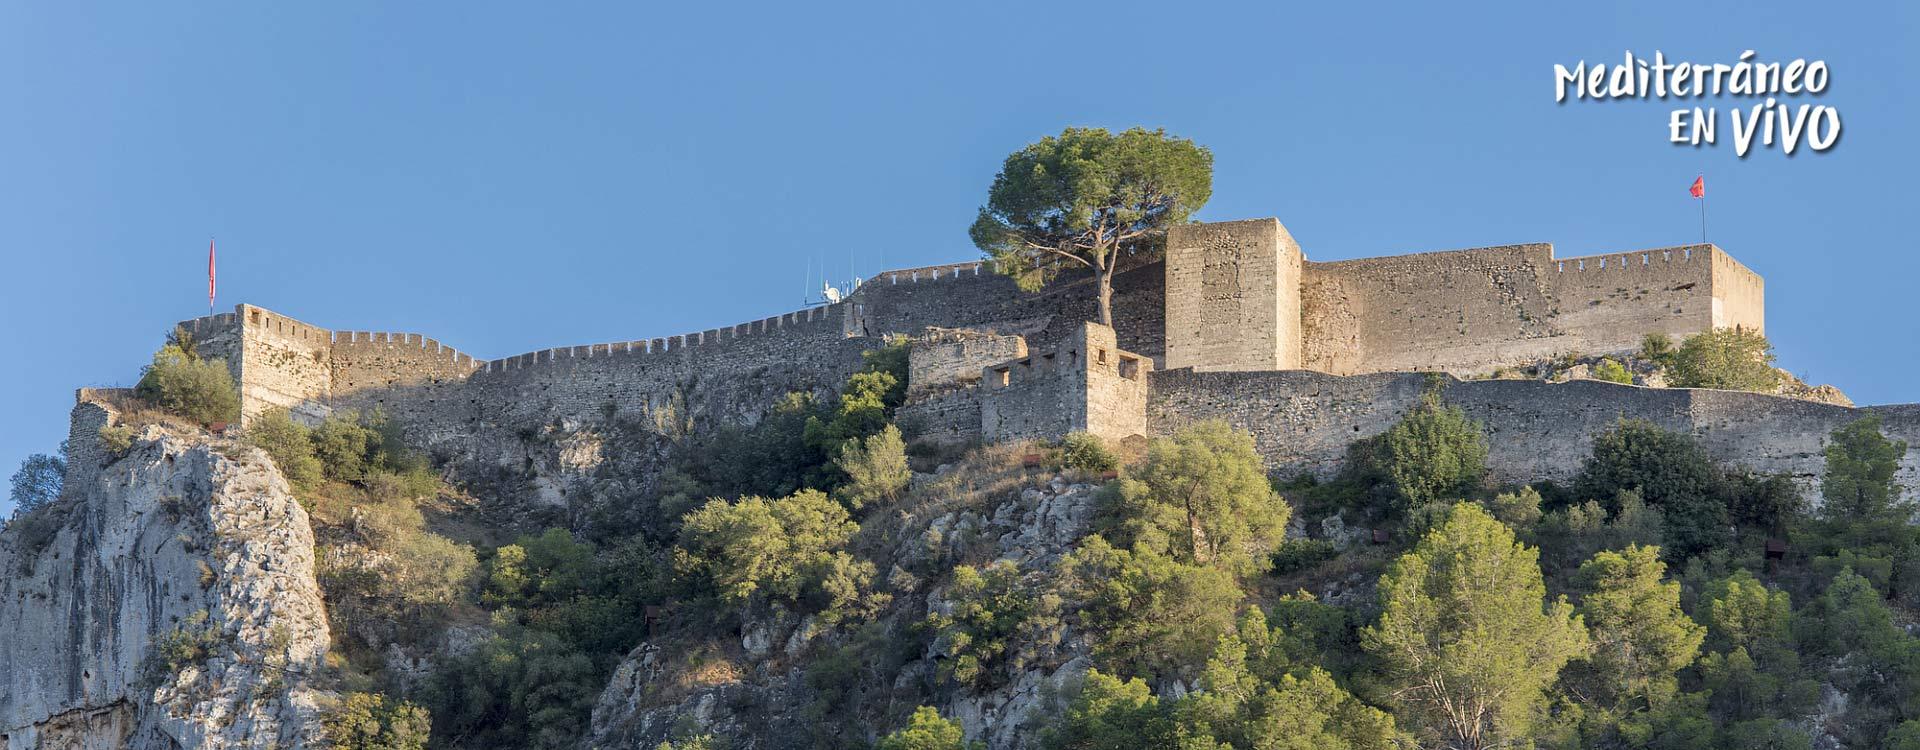 Imagen del Castillo de Xàtiva 